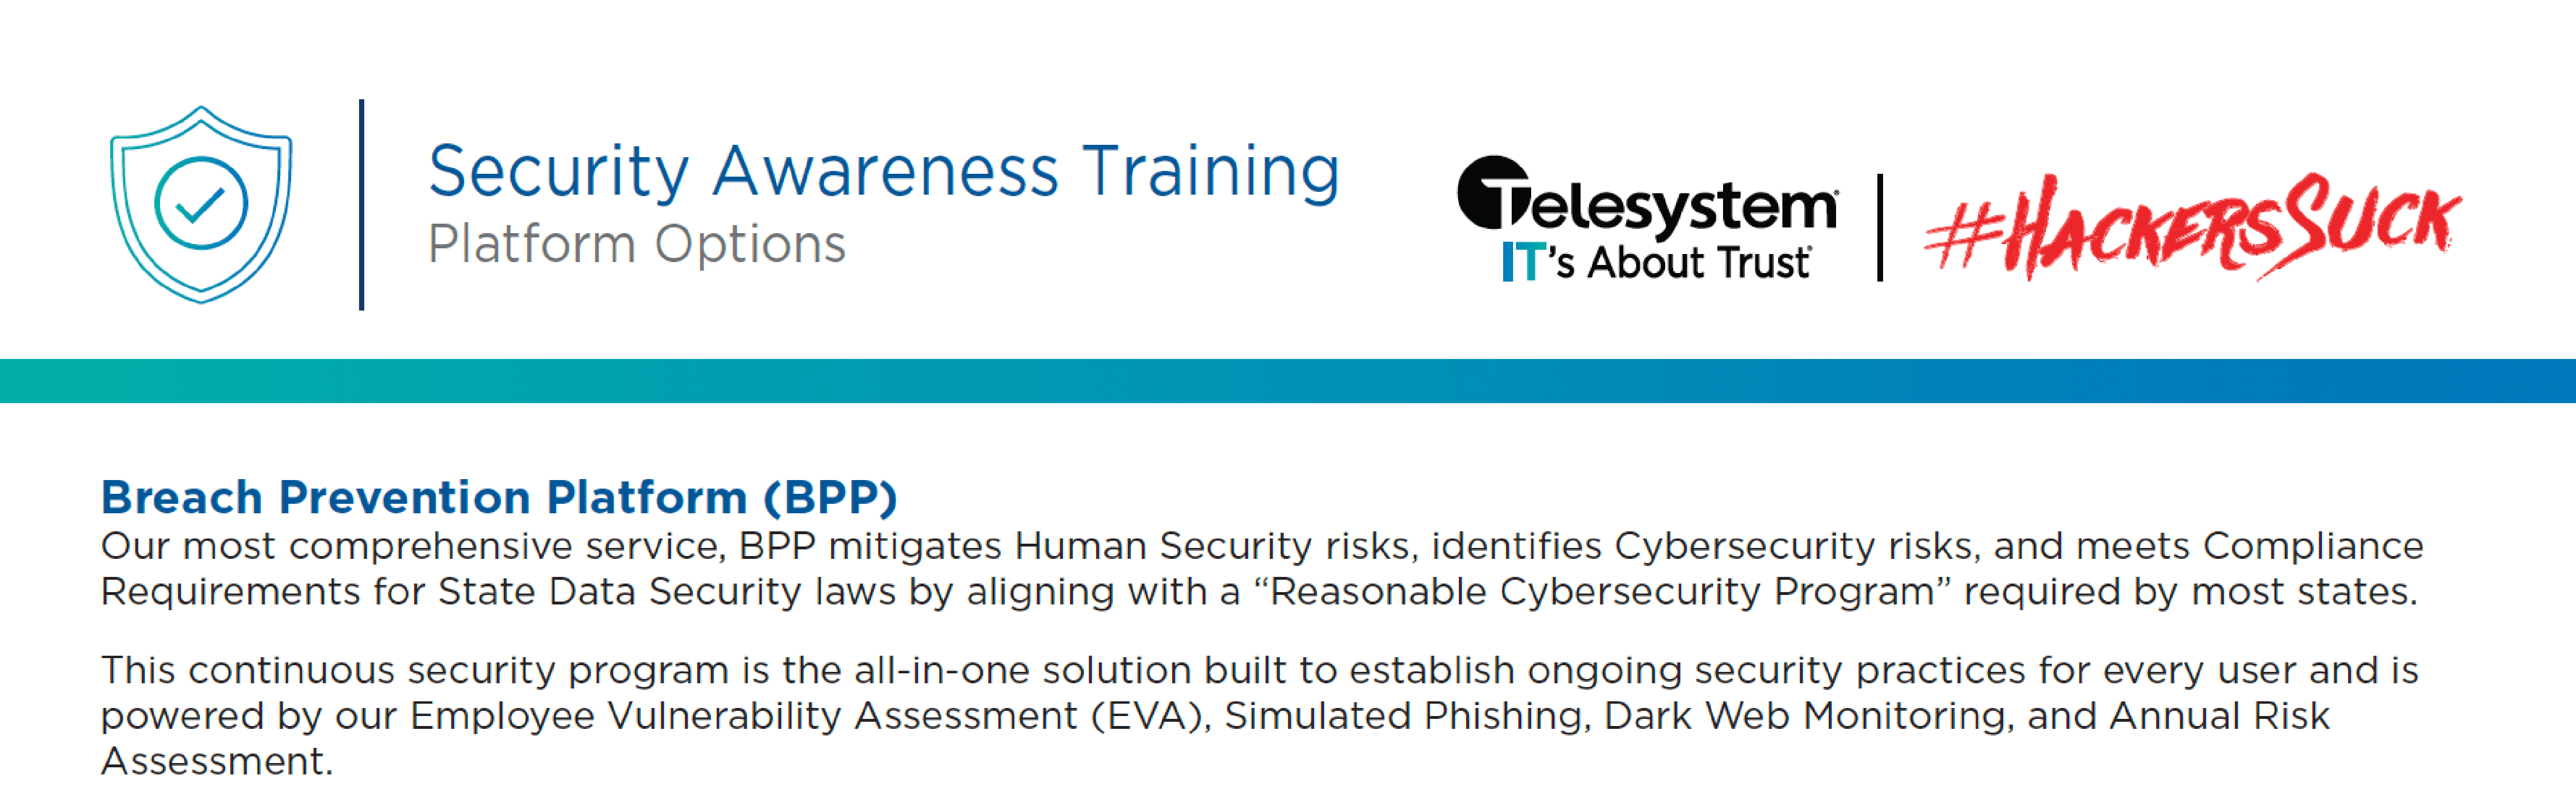 Security Awareness Training_Platform Options Thumbnail